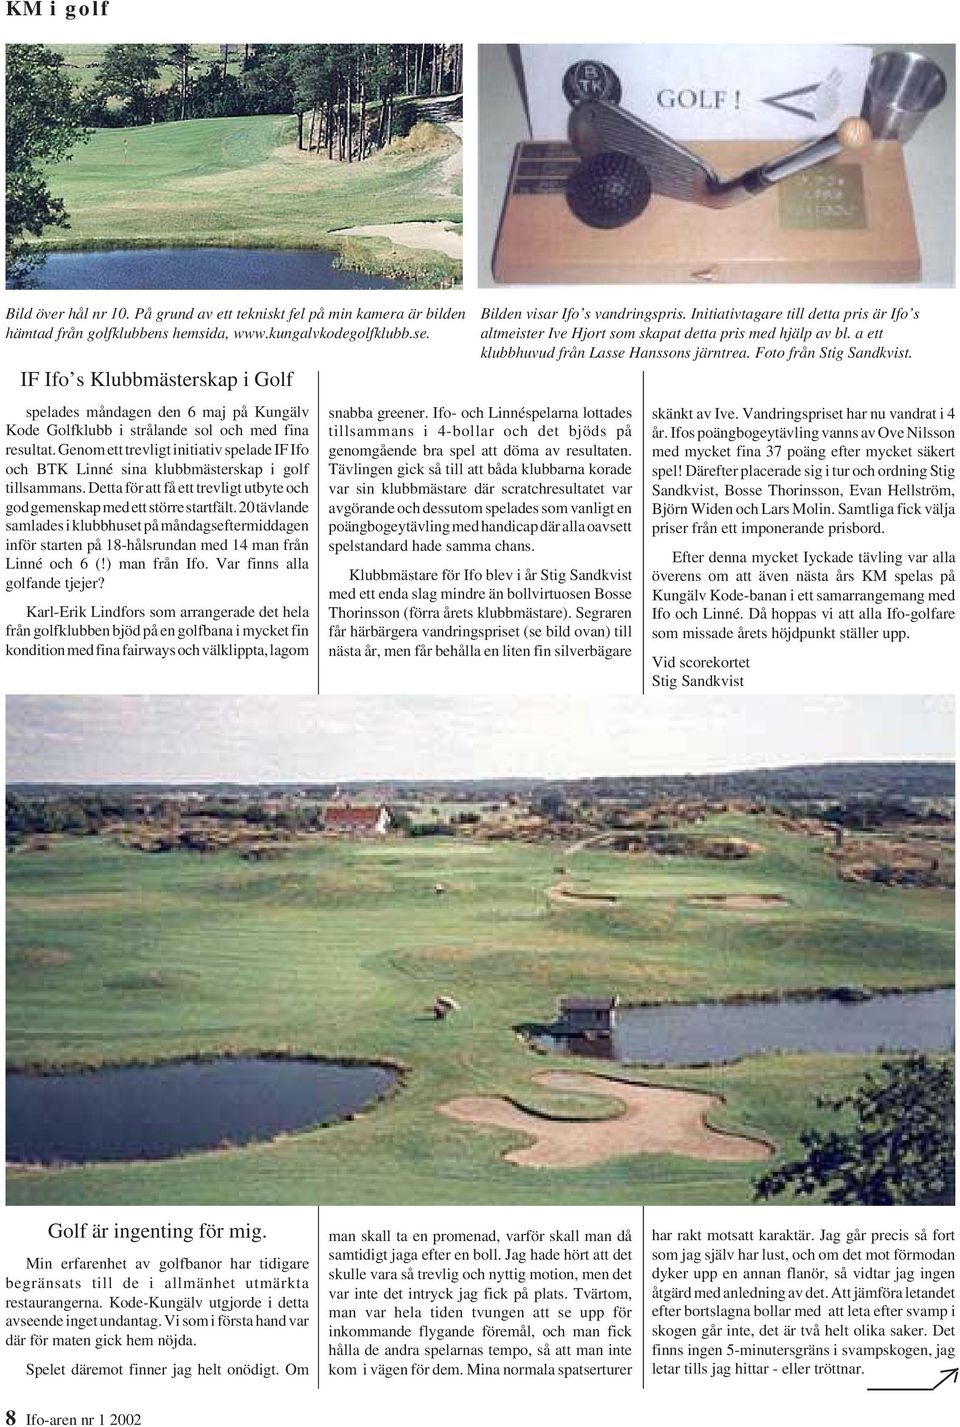 Genom ett trevligt initiativ spelade IF Ifo och BTK Linné sina klubbmästerskap i golf tillsammans. Detta för att få ett trevligt utbyte och god gemenskap med ett större startfält.